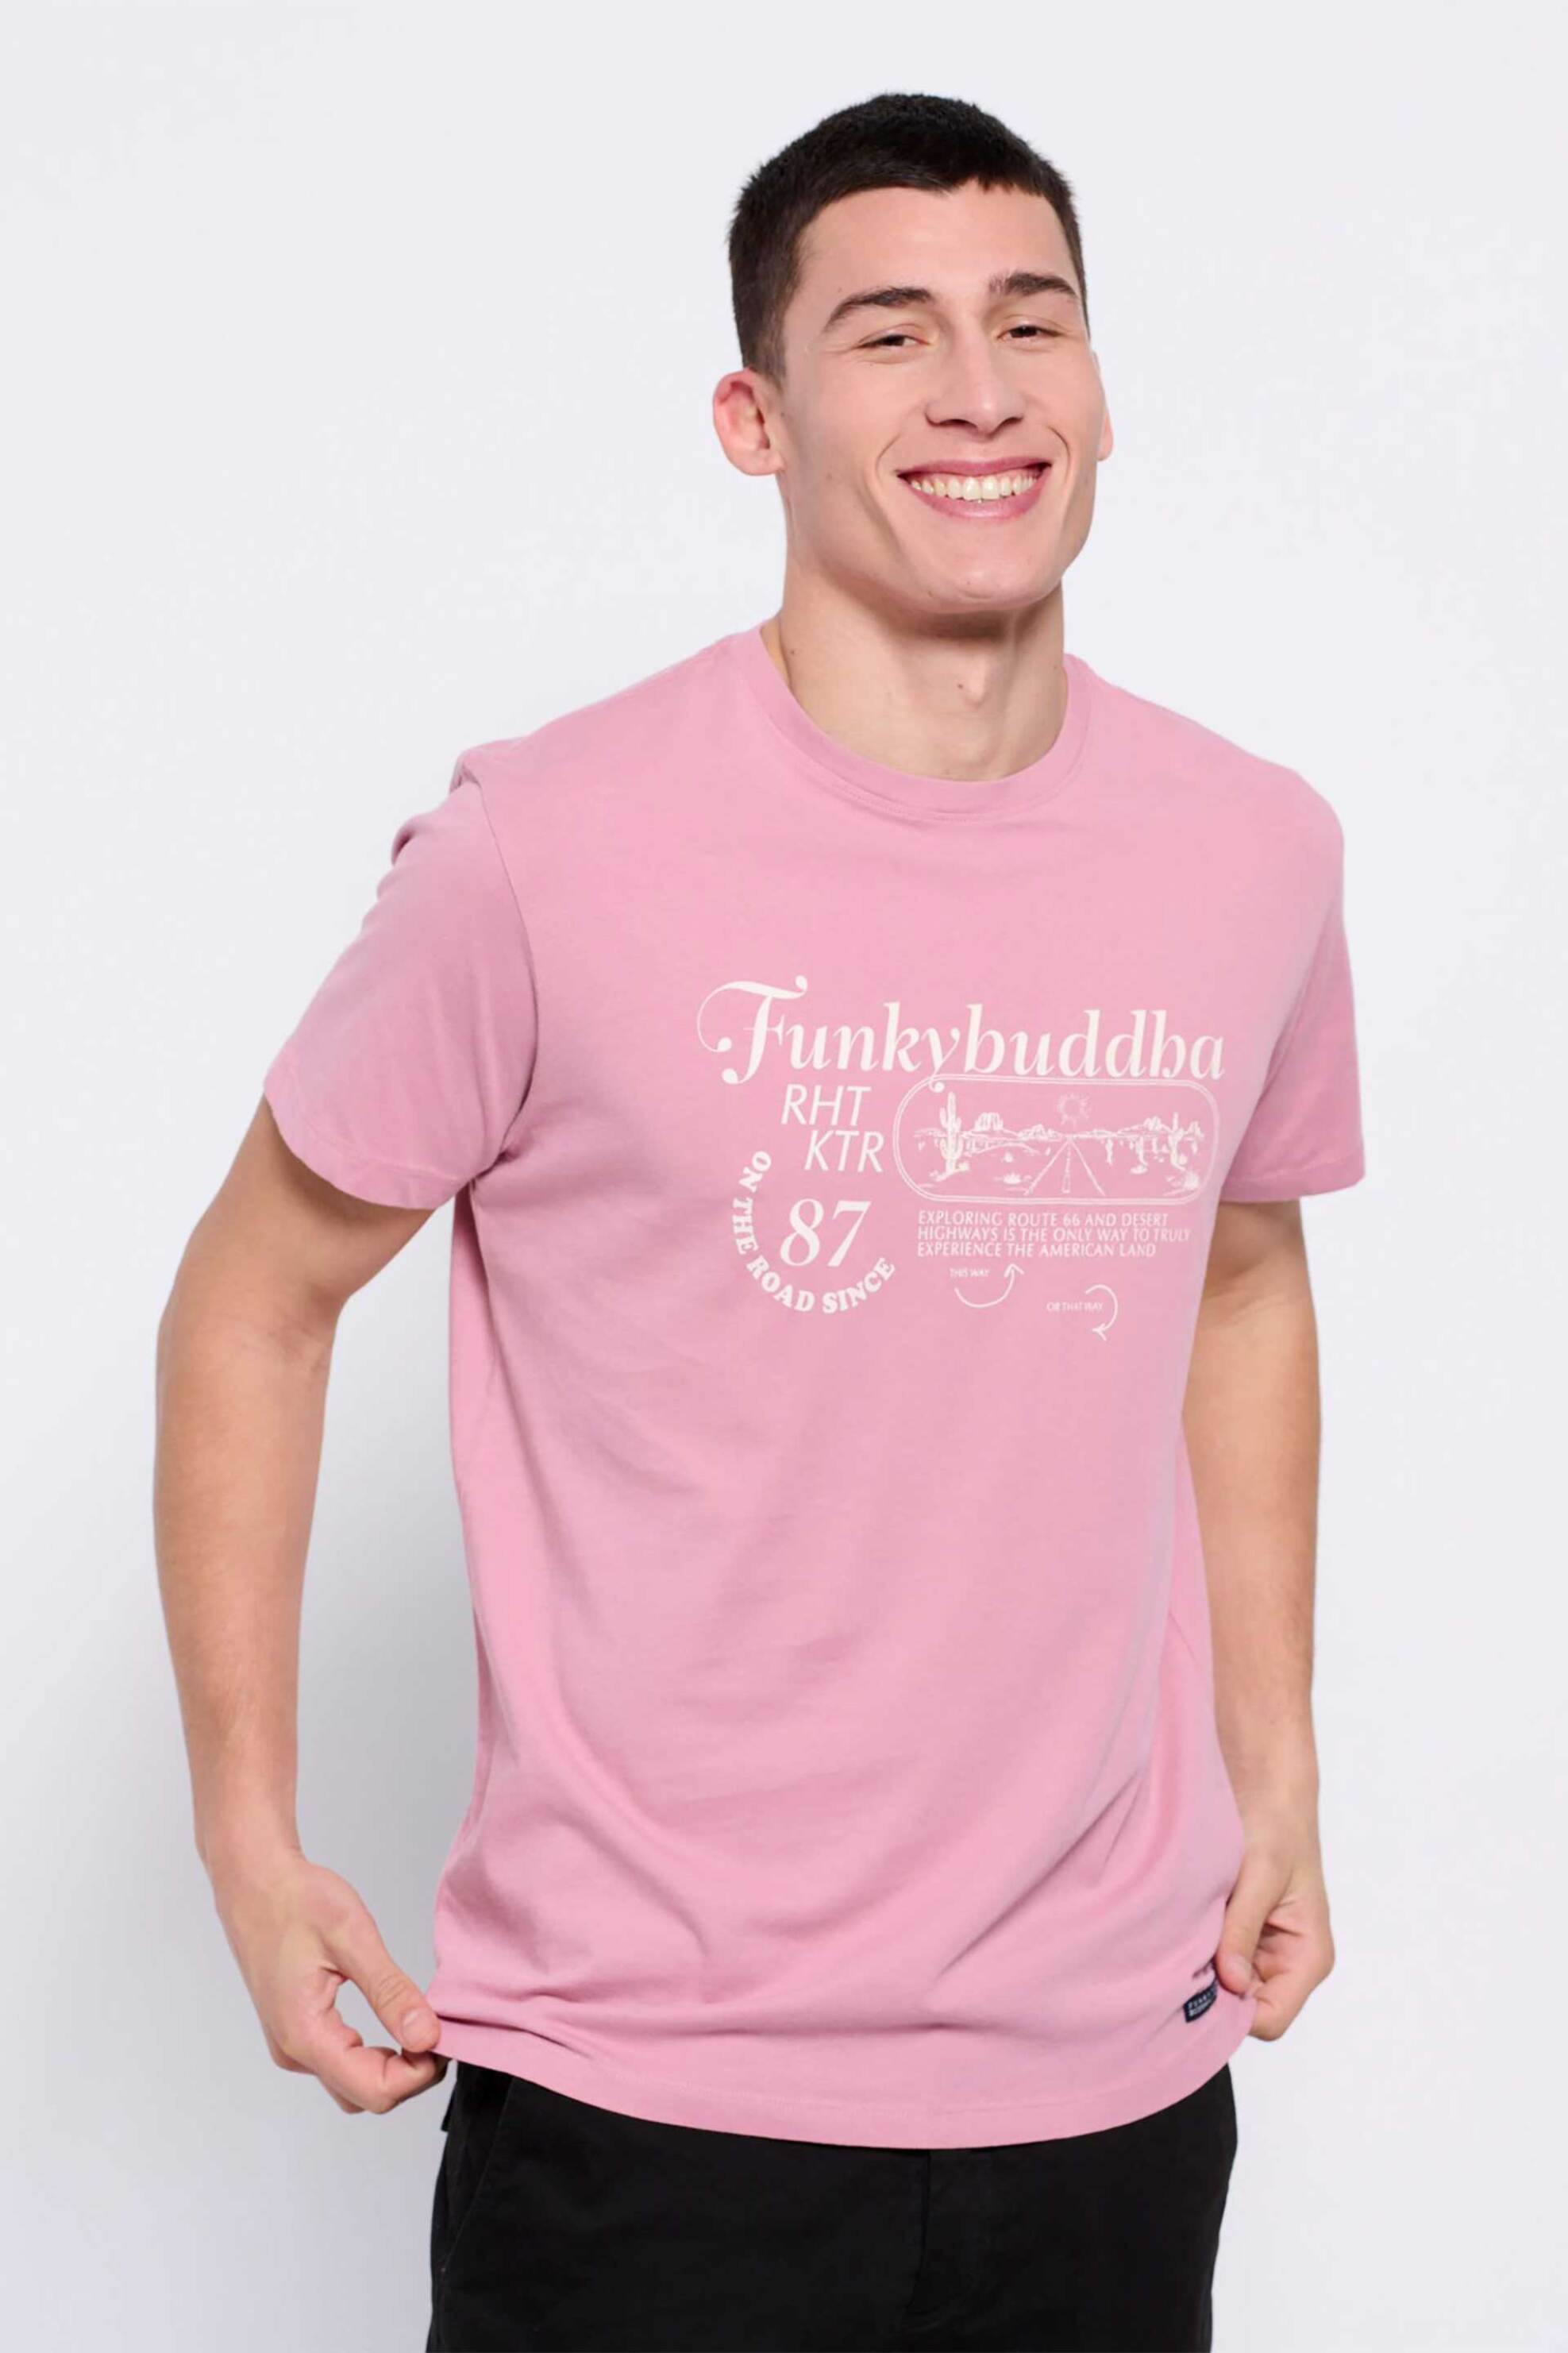 Ανδρική Μόδα > Ανδρικά Ρούχα > Ανδρικές Μπλούζες > Ανδρικά T-Shirts Funky Buddha ανδρικό βαμβακερό T-shirt μονόχρωμο με retro print μπροστά - FBM007-034-04 Ροζ